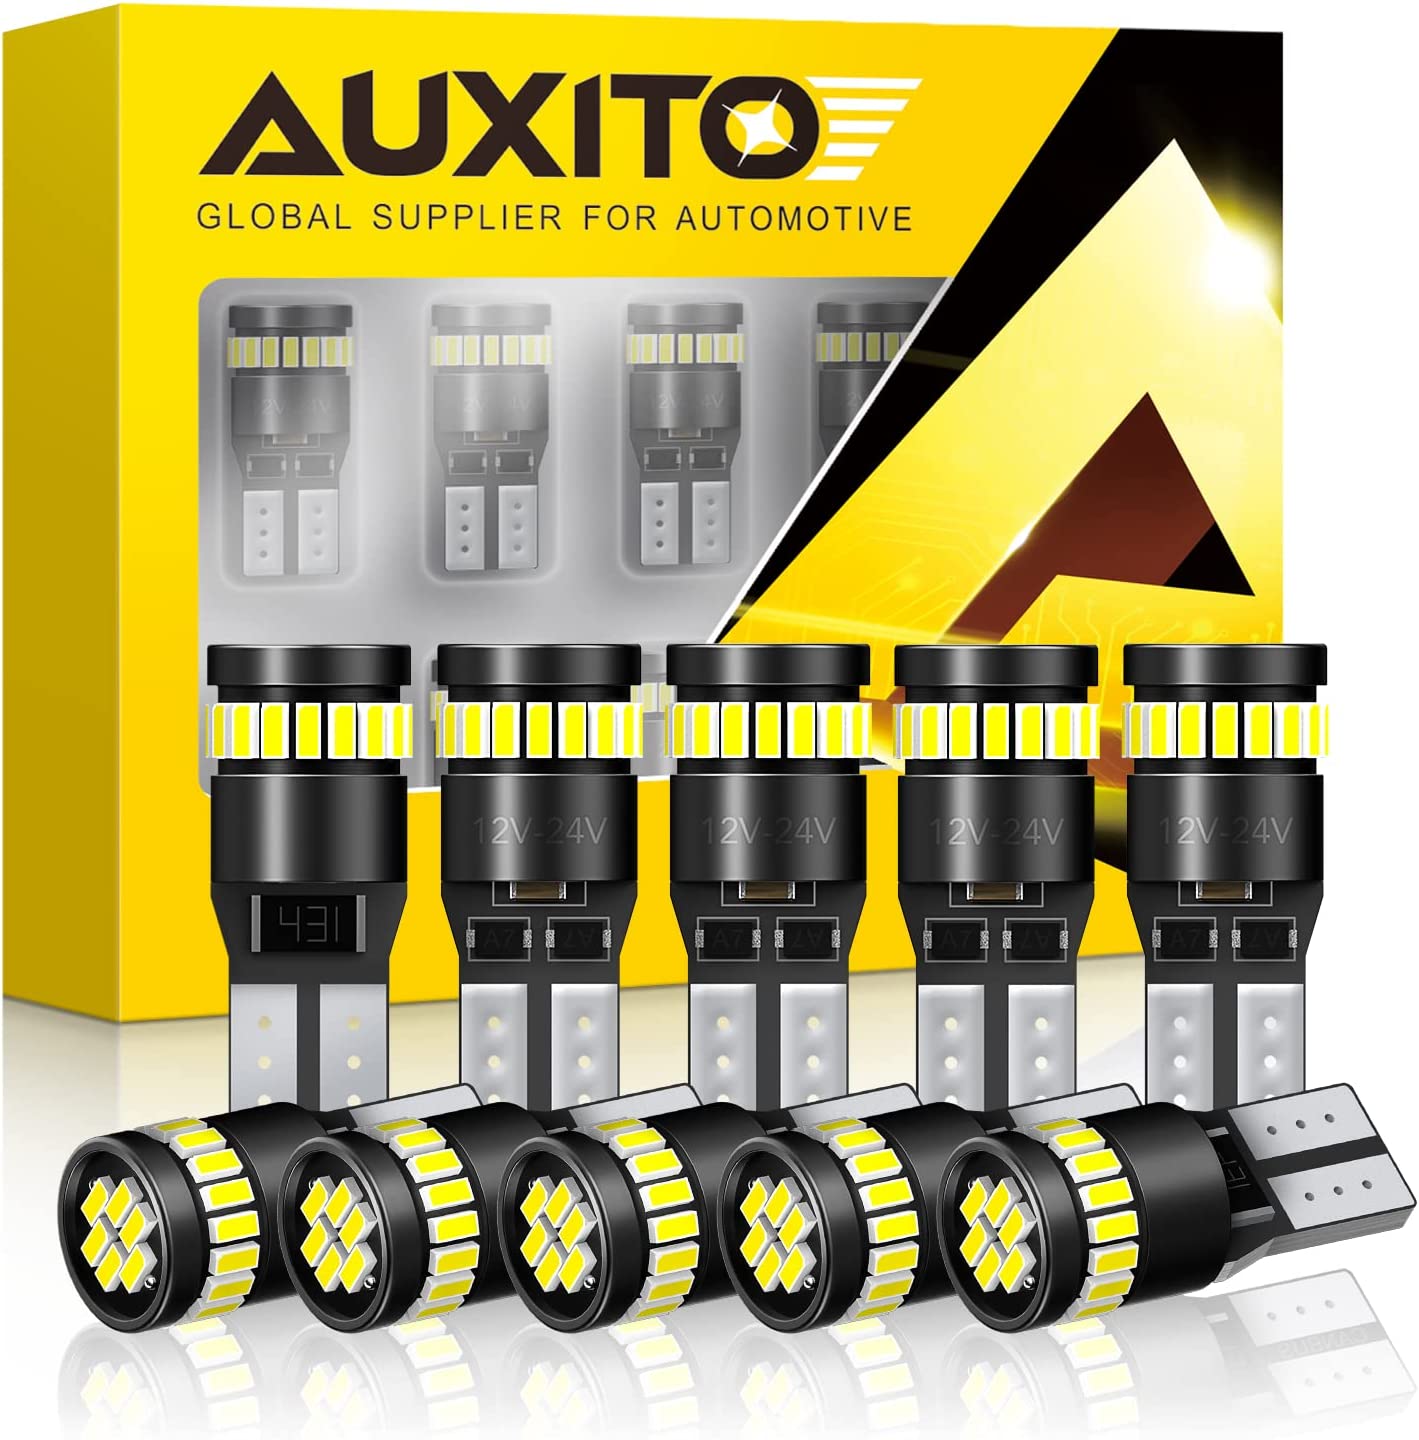 Image of Auxito 194 LED headlight